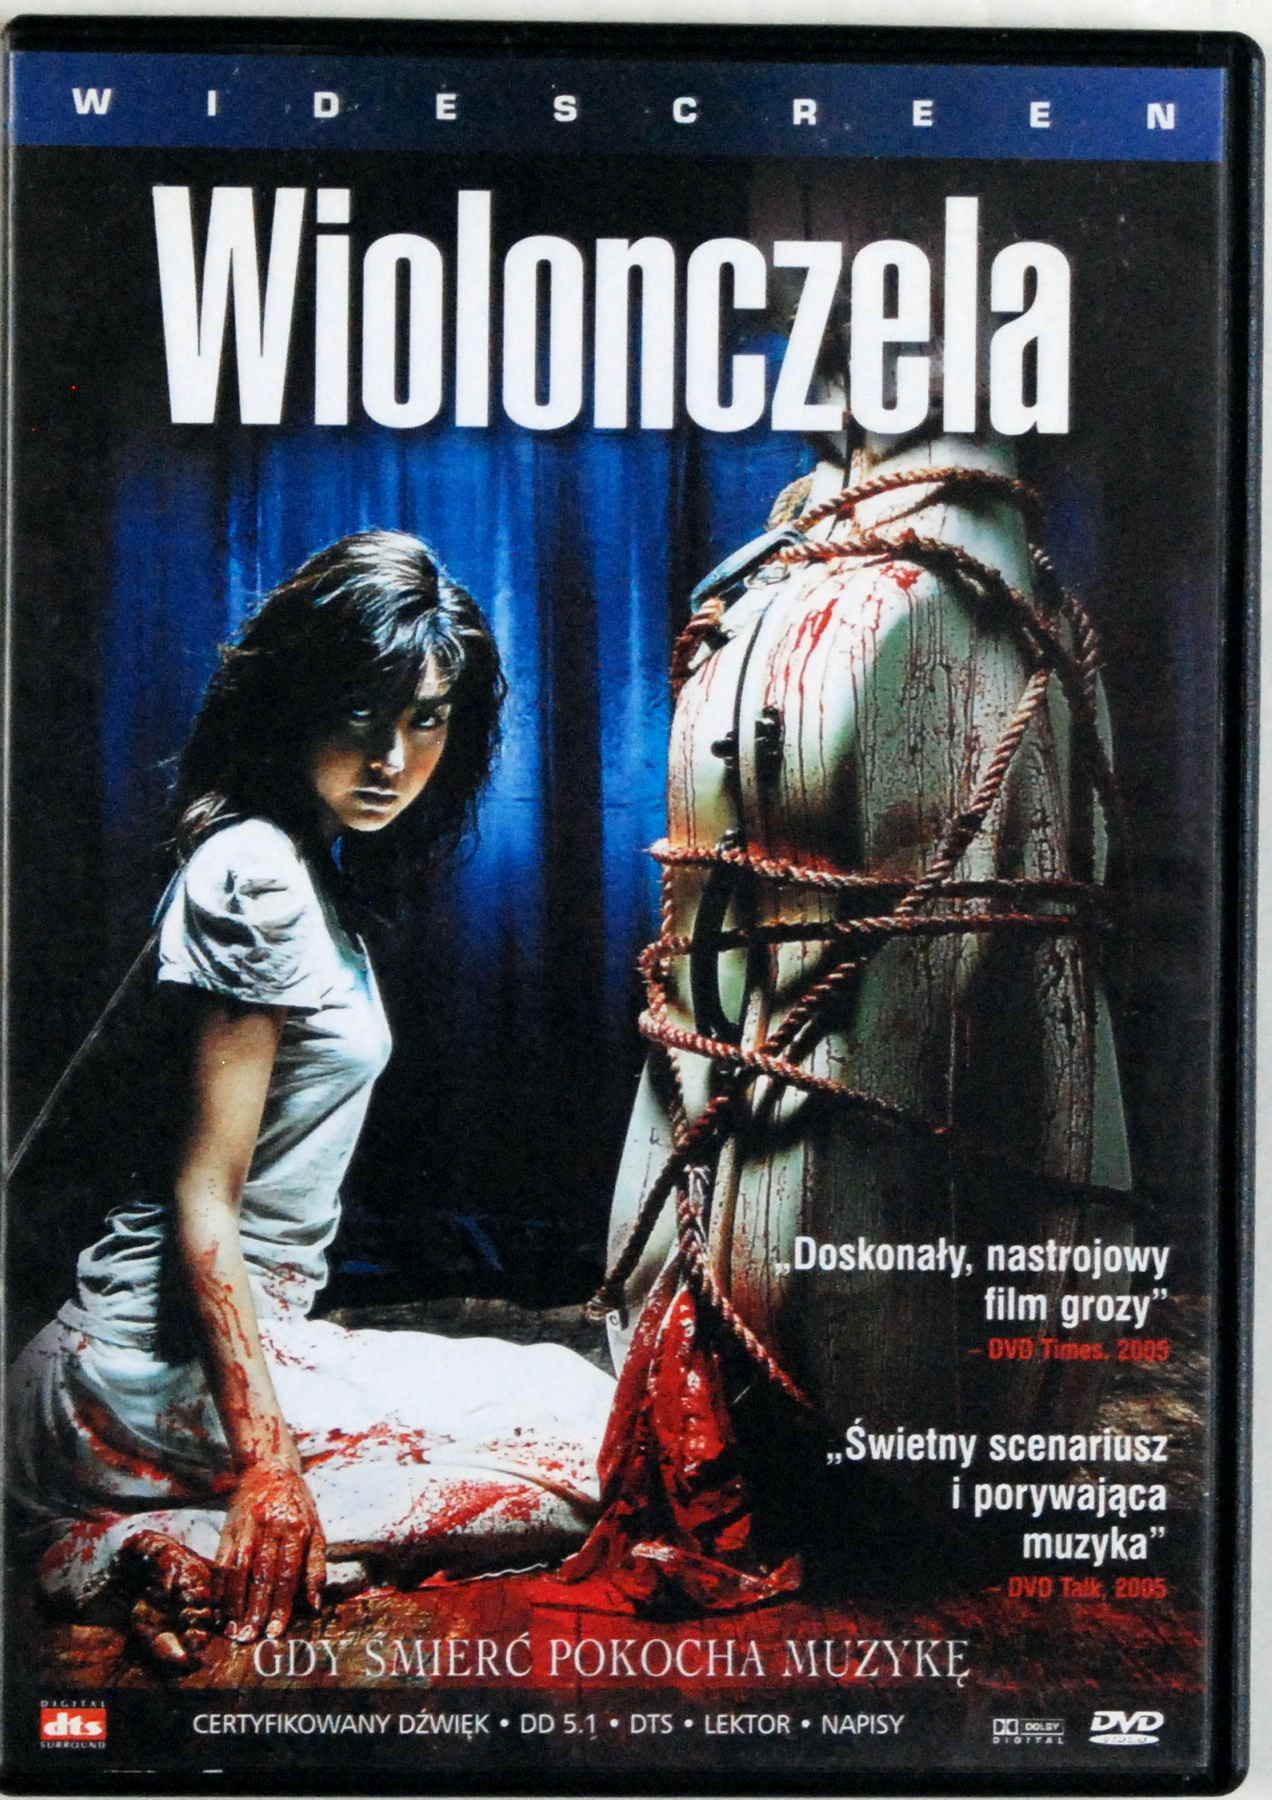 DVD Wiolonczela (IDG)